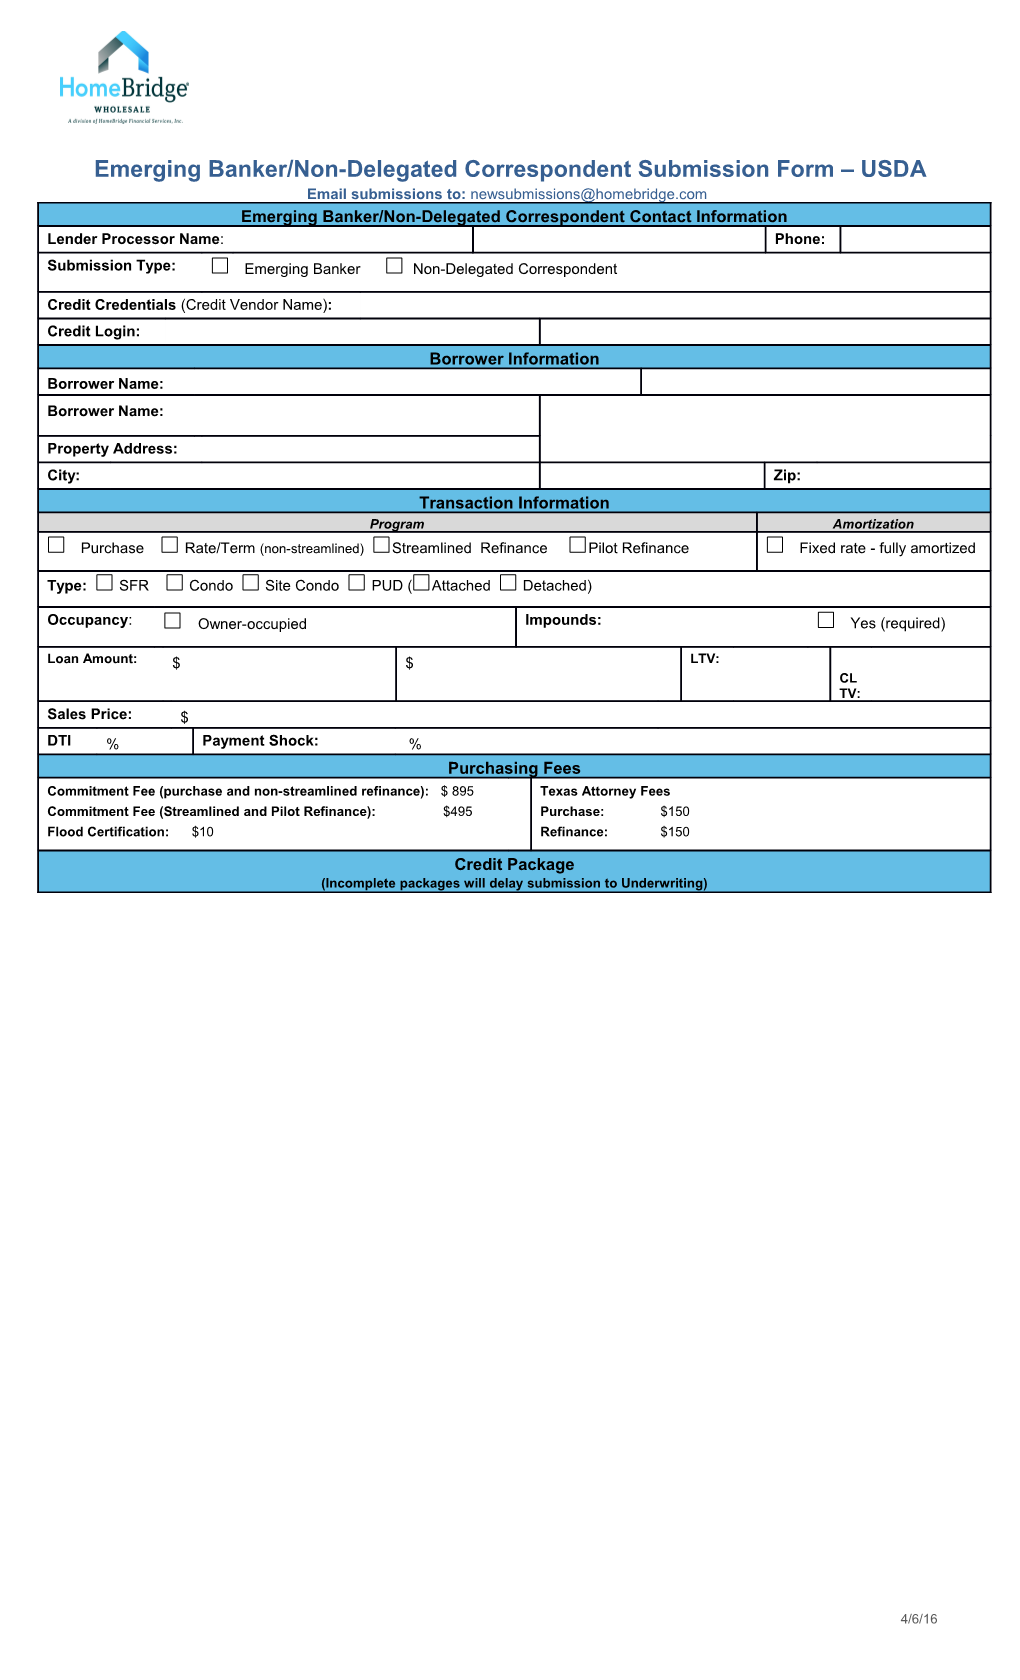 Emerging Banker/Non-Delegated Correspondent Submission Form USDA